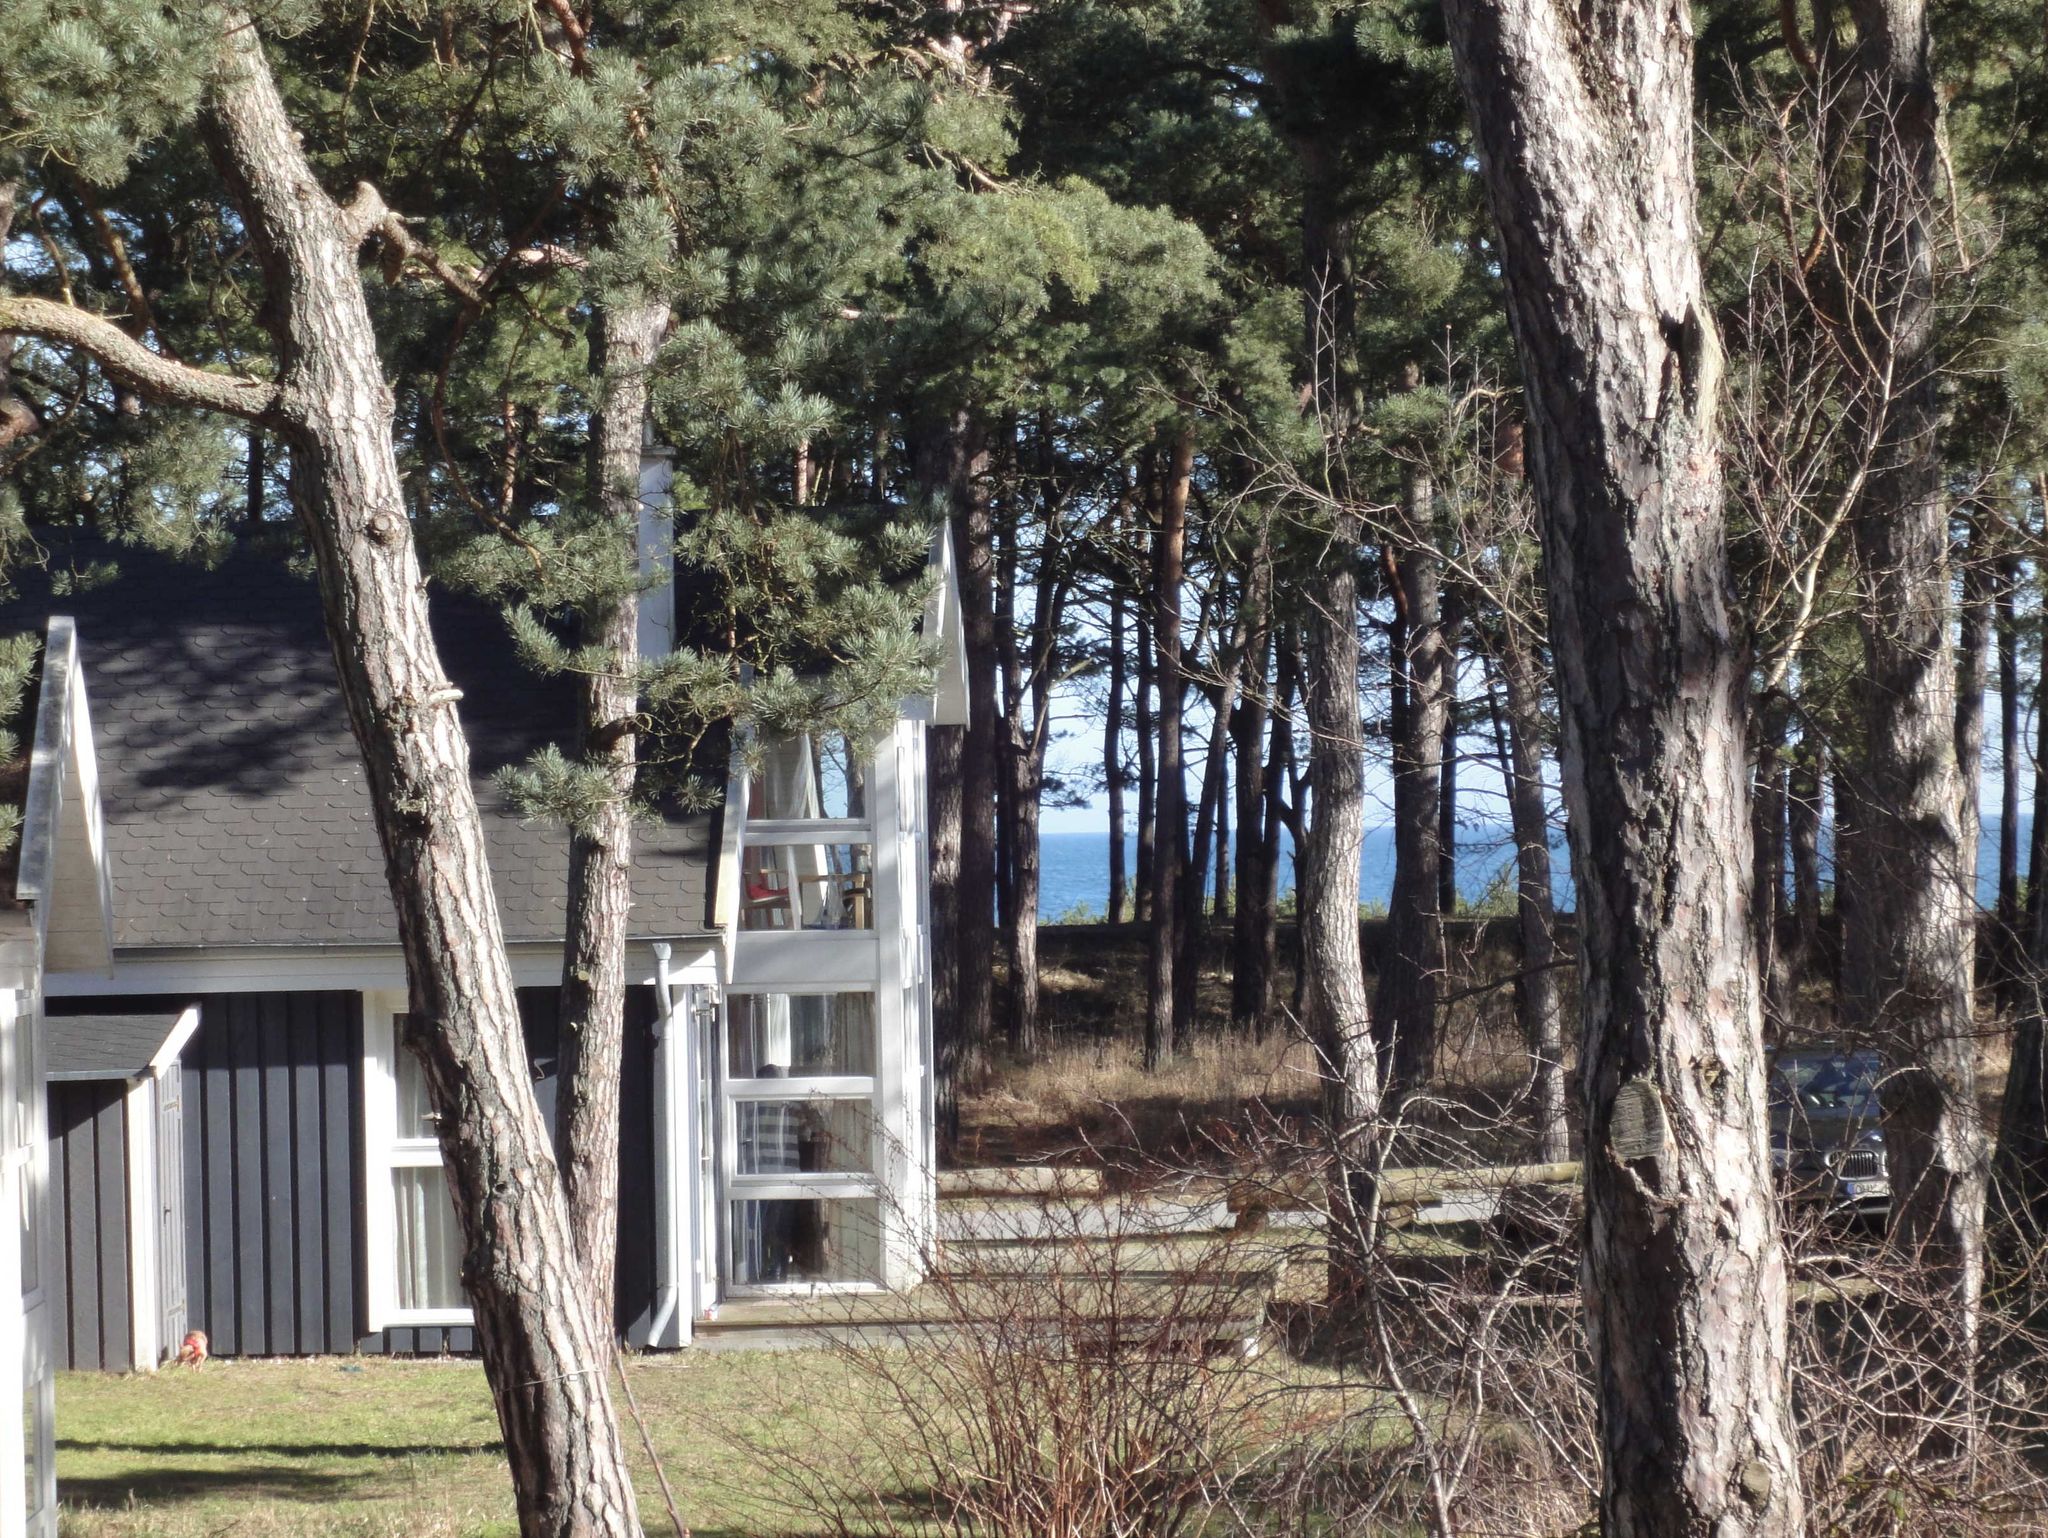 Haus mit Ostsee im Hintergrund